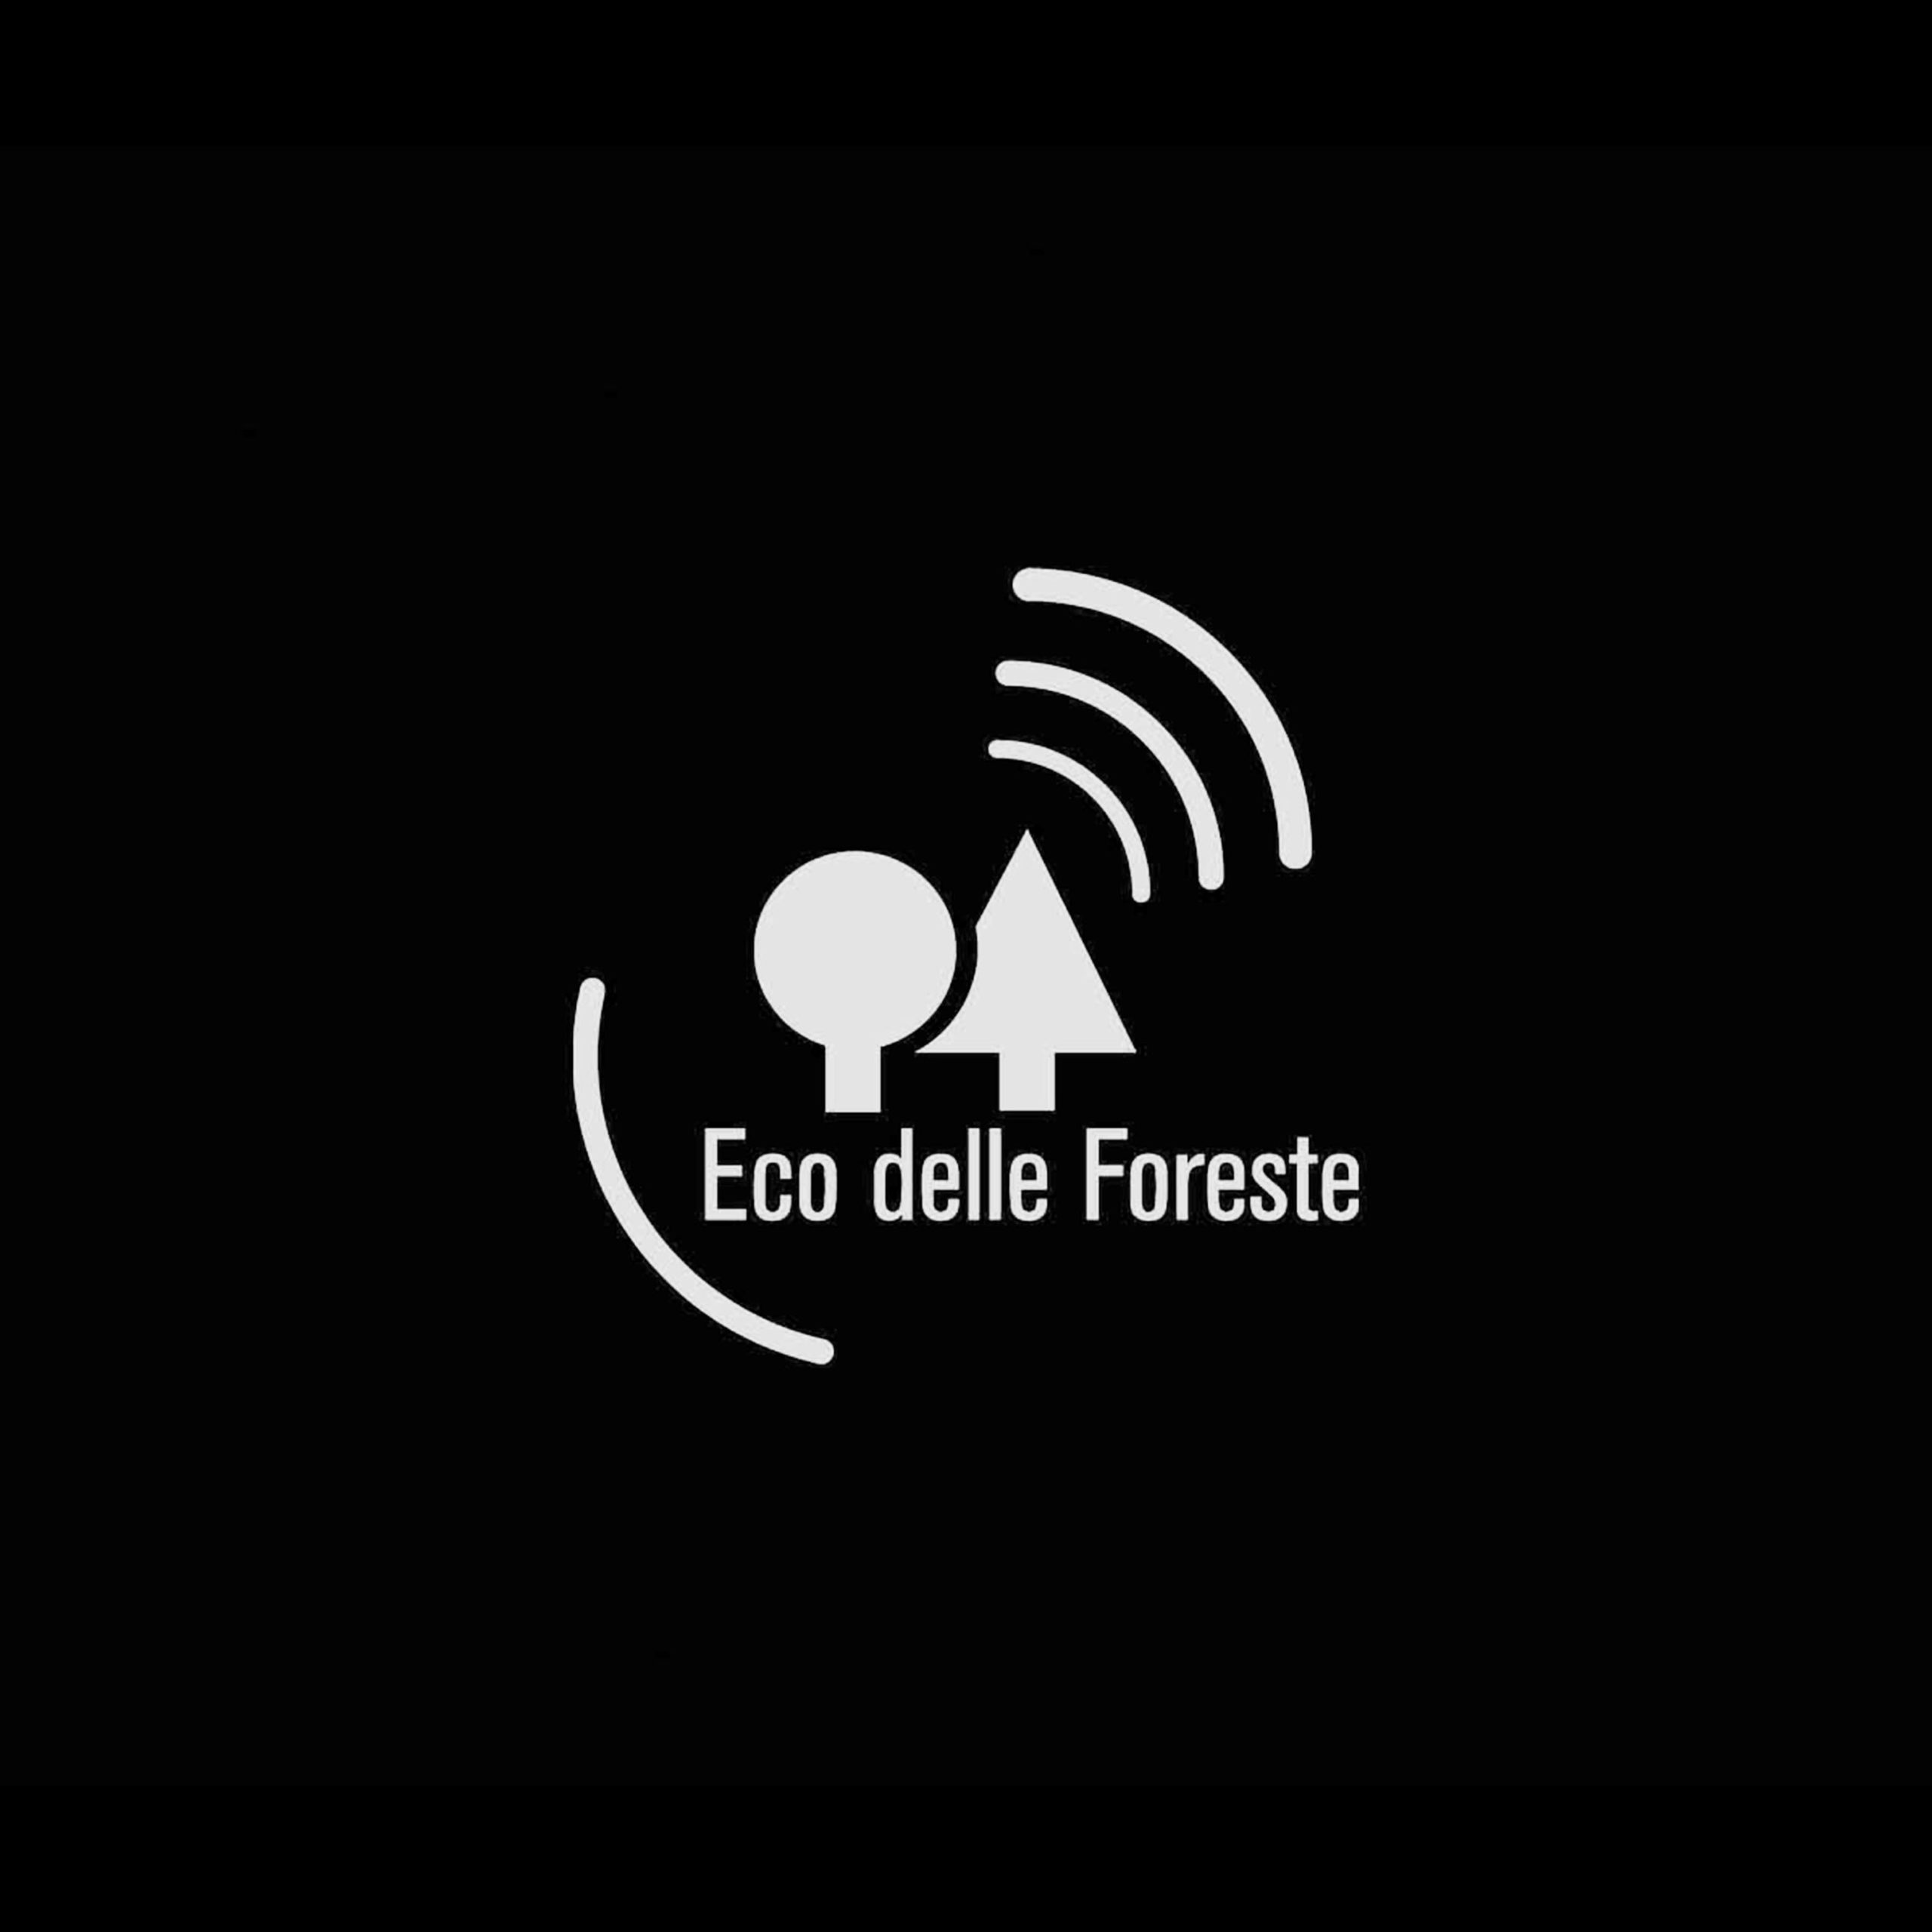 Eco delle Foreste